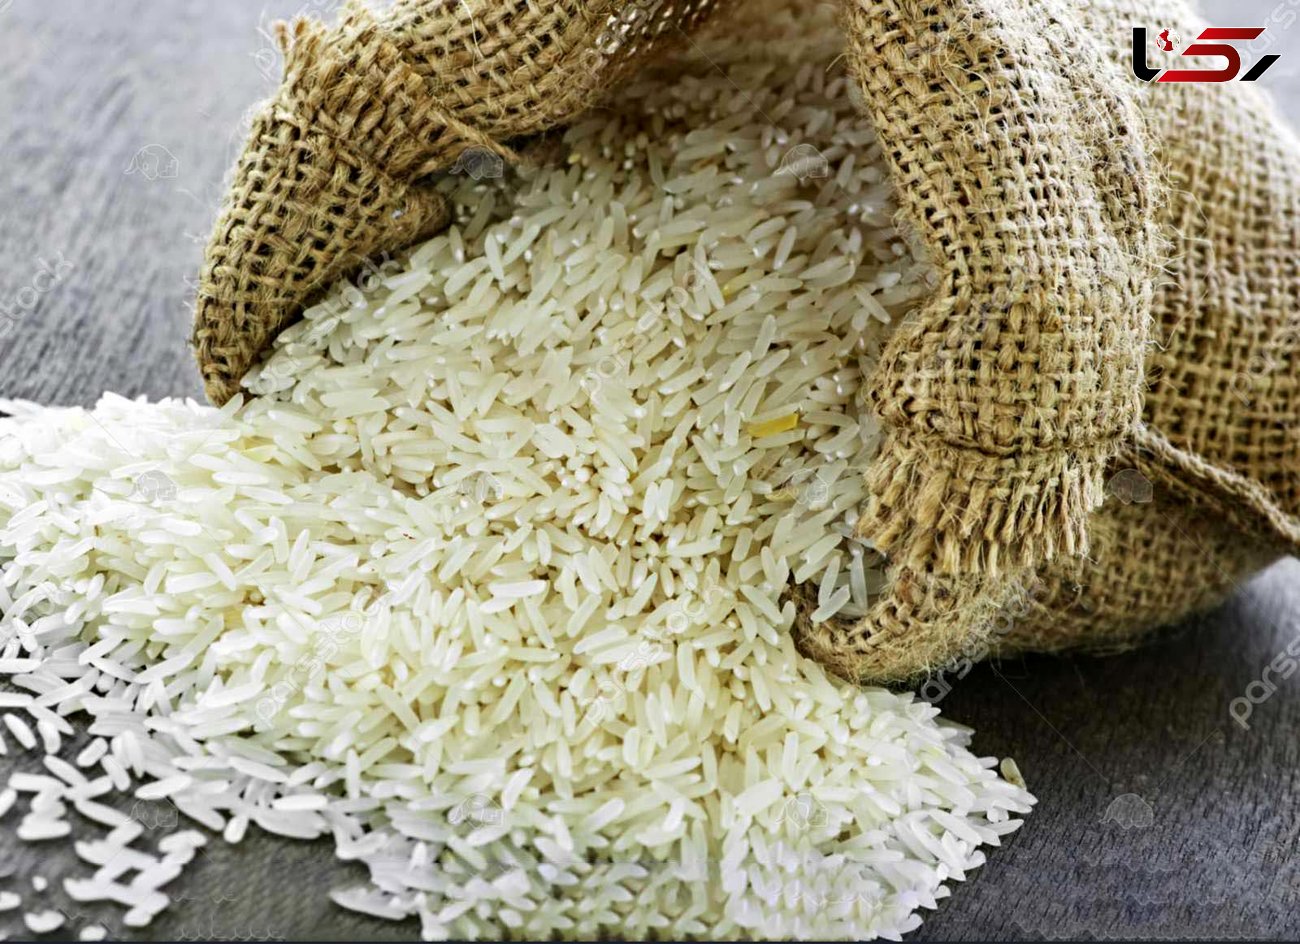 کاهش صادرات برنج هندی به ایران به خاطر کرونا